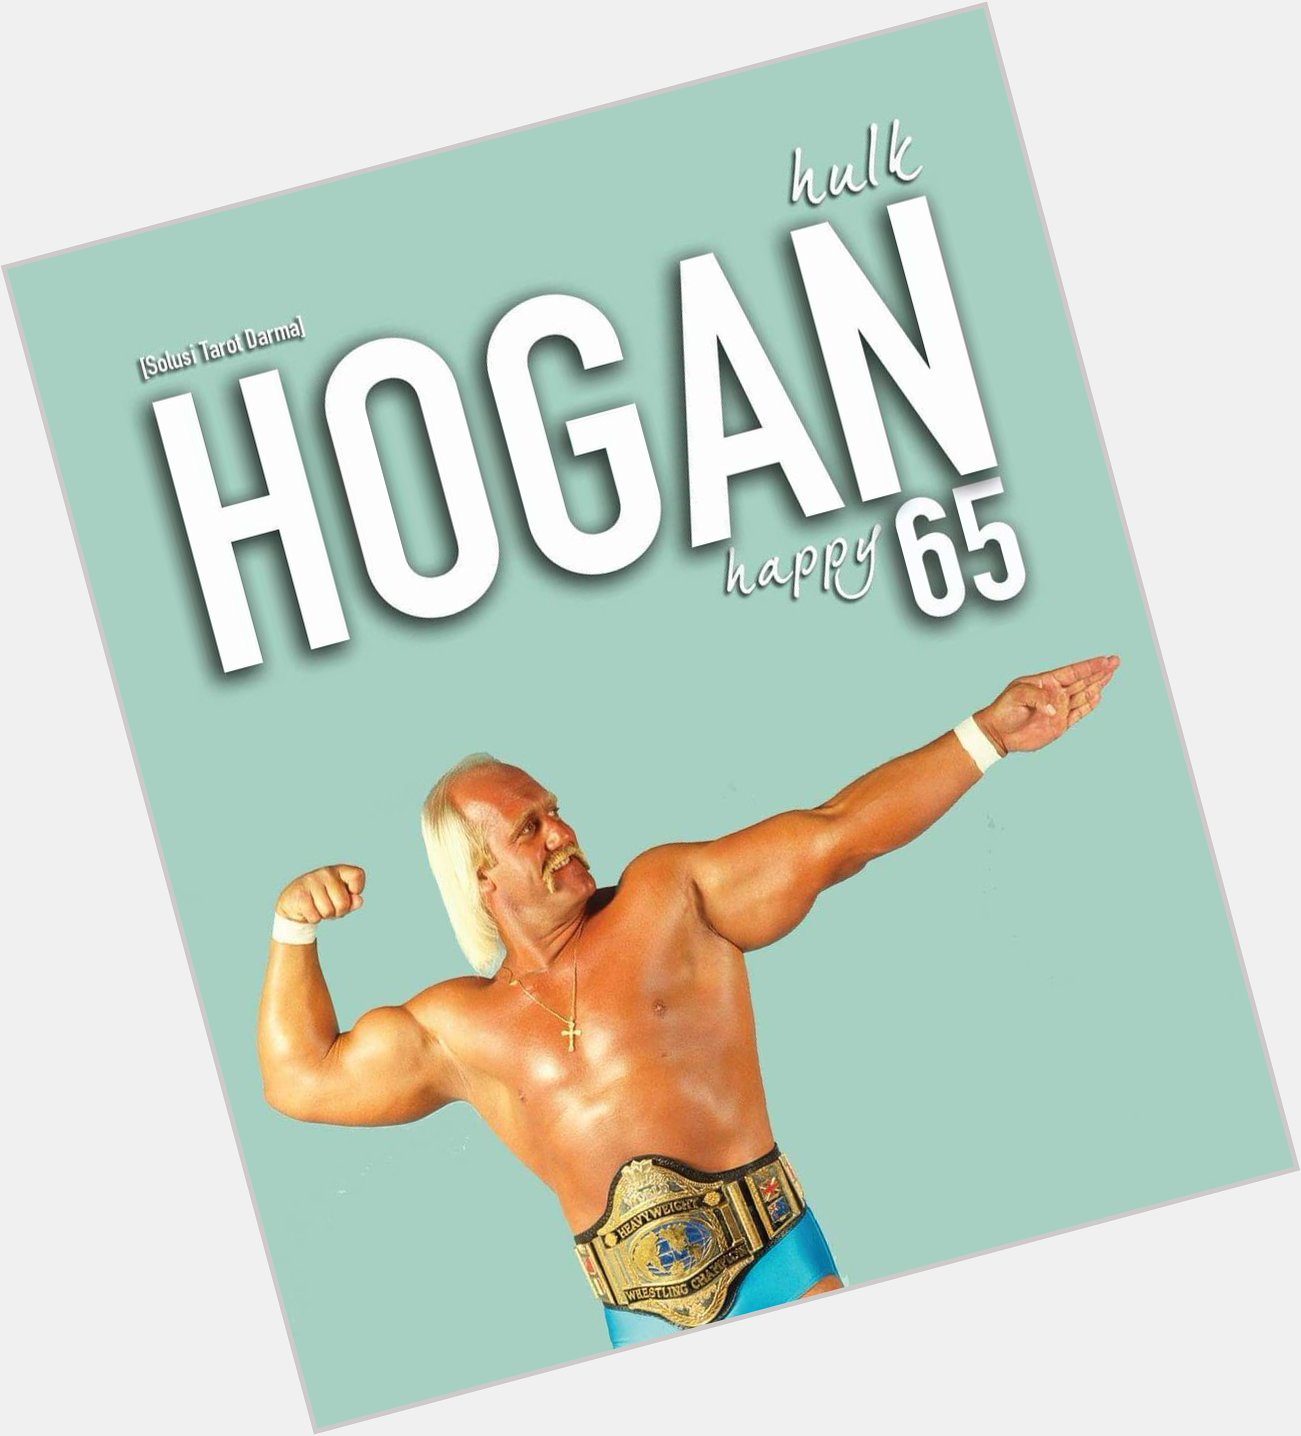 Happy Birthday Hulk Hogan    